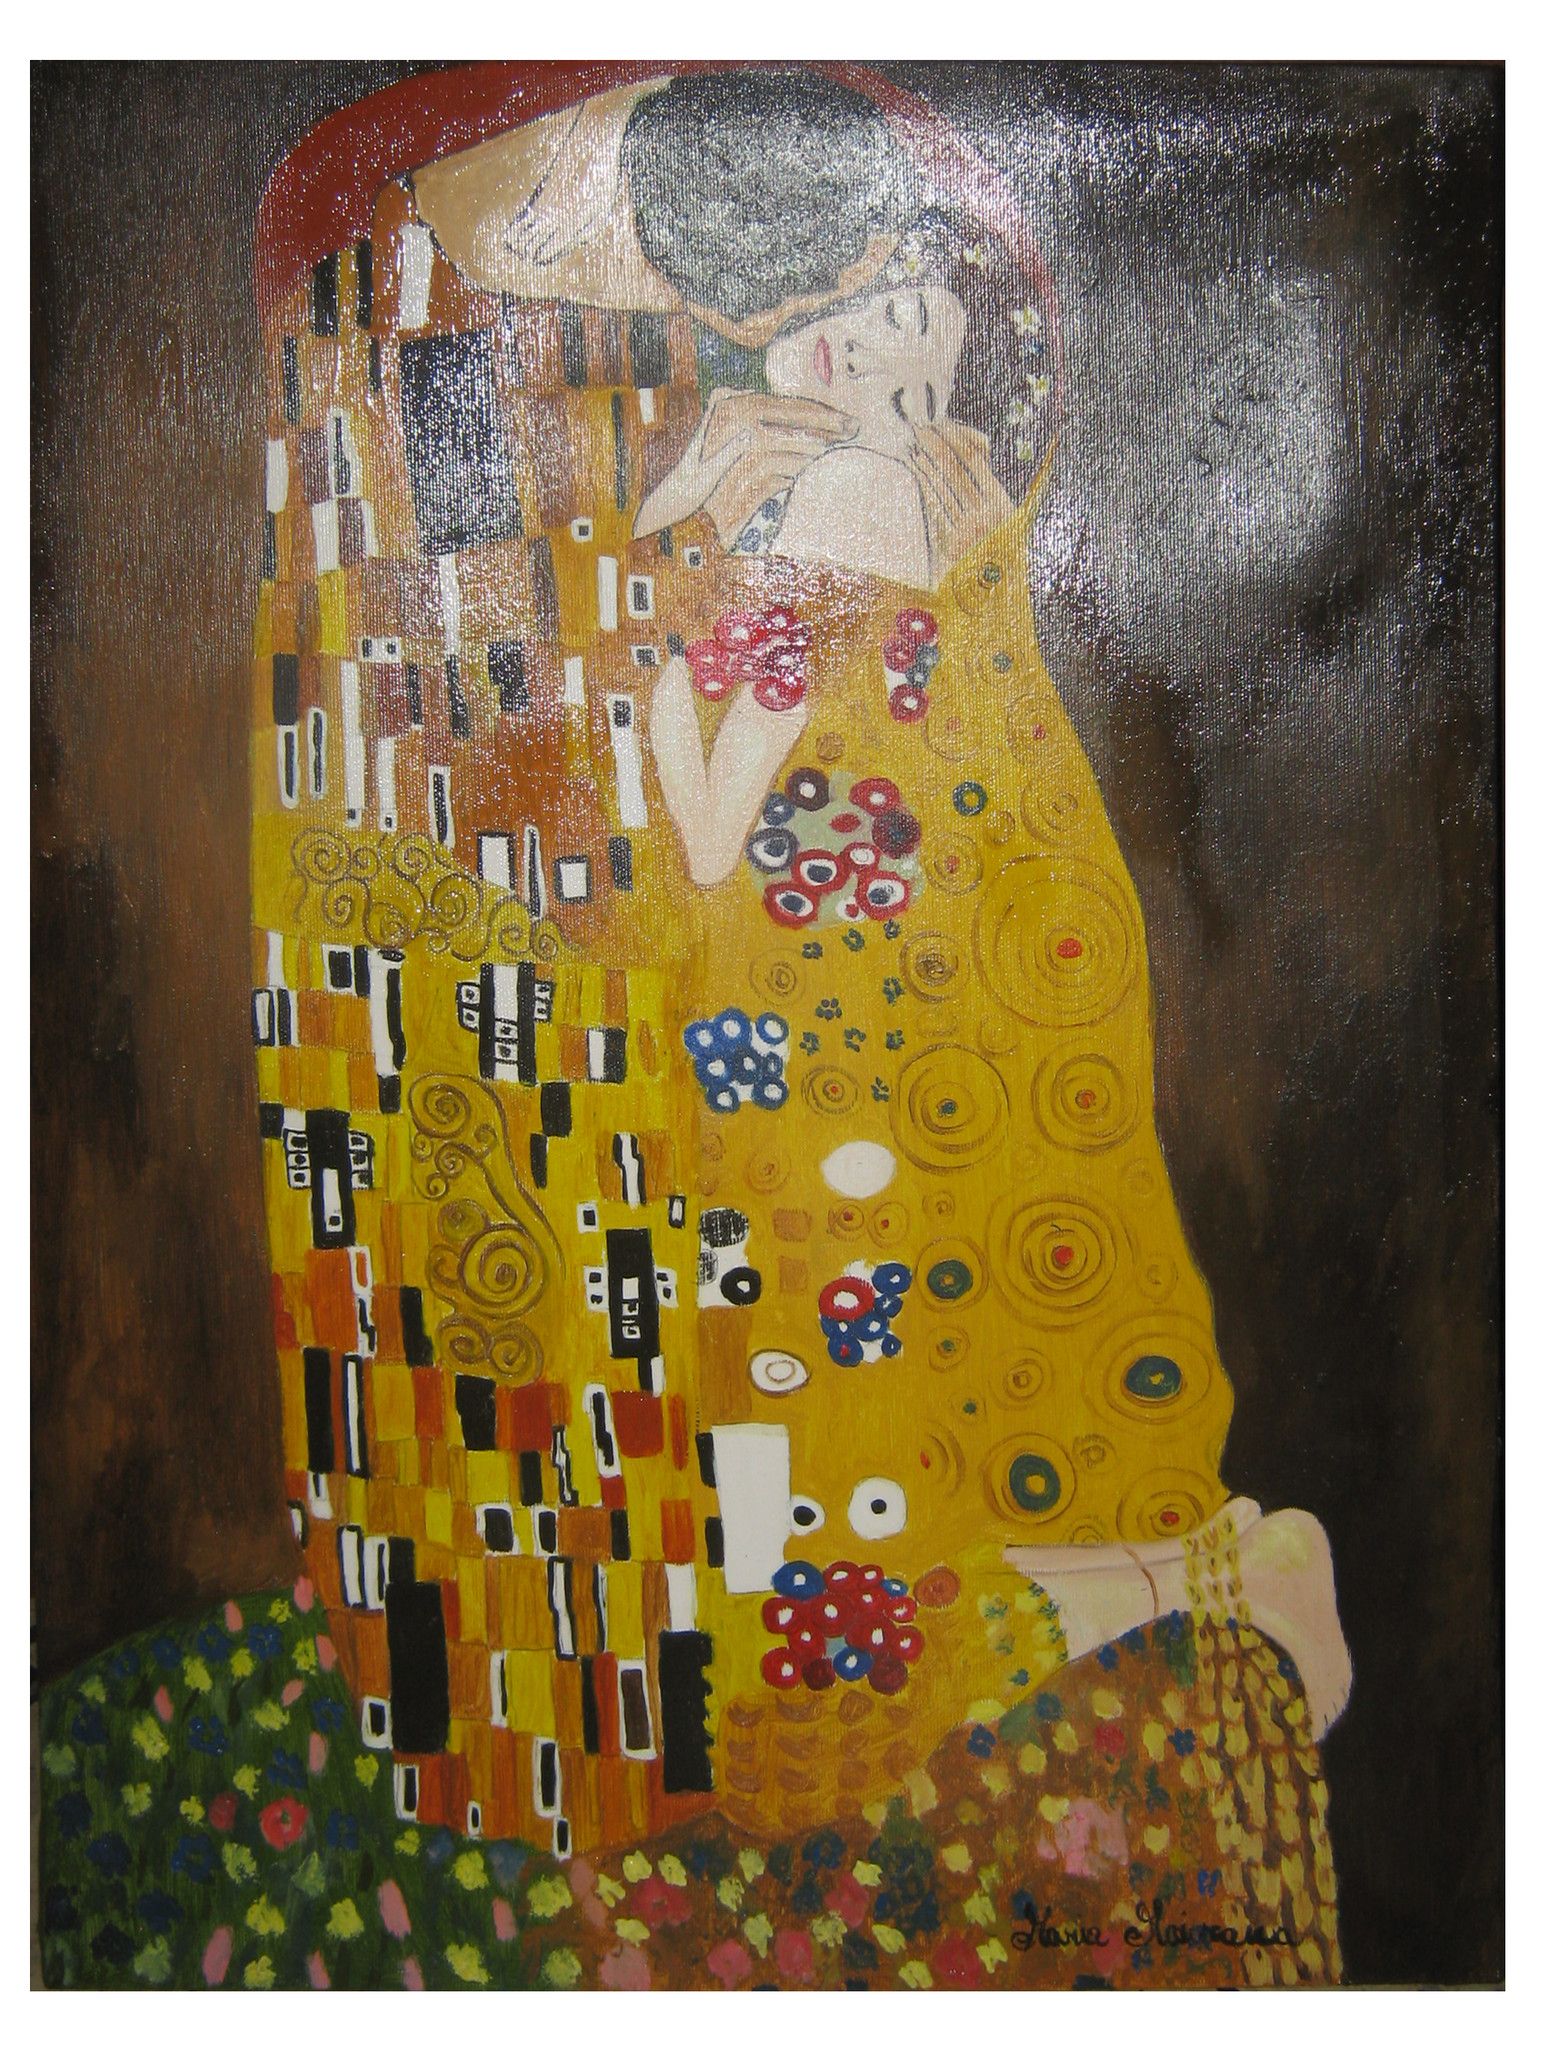 Il bacio - Copia di Gustav Klimt - 50x60 - Arte e svago - Erashop